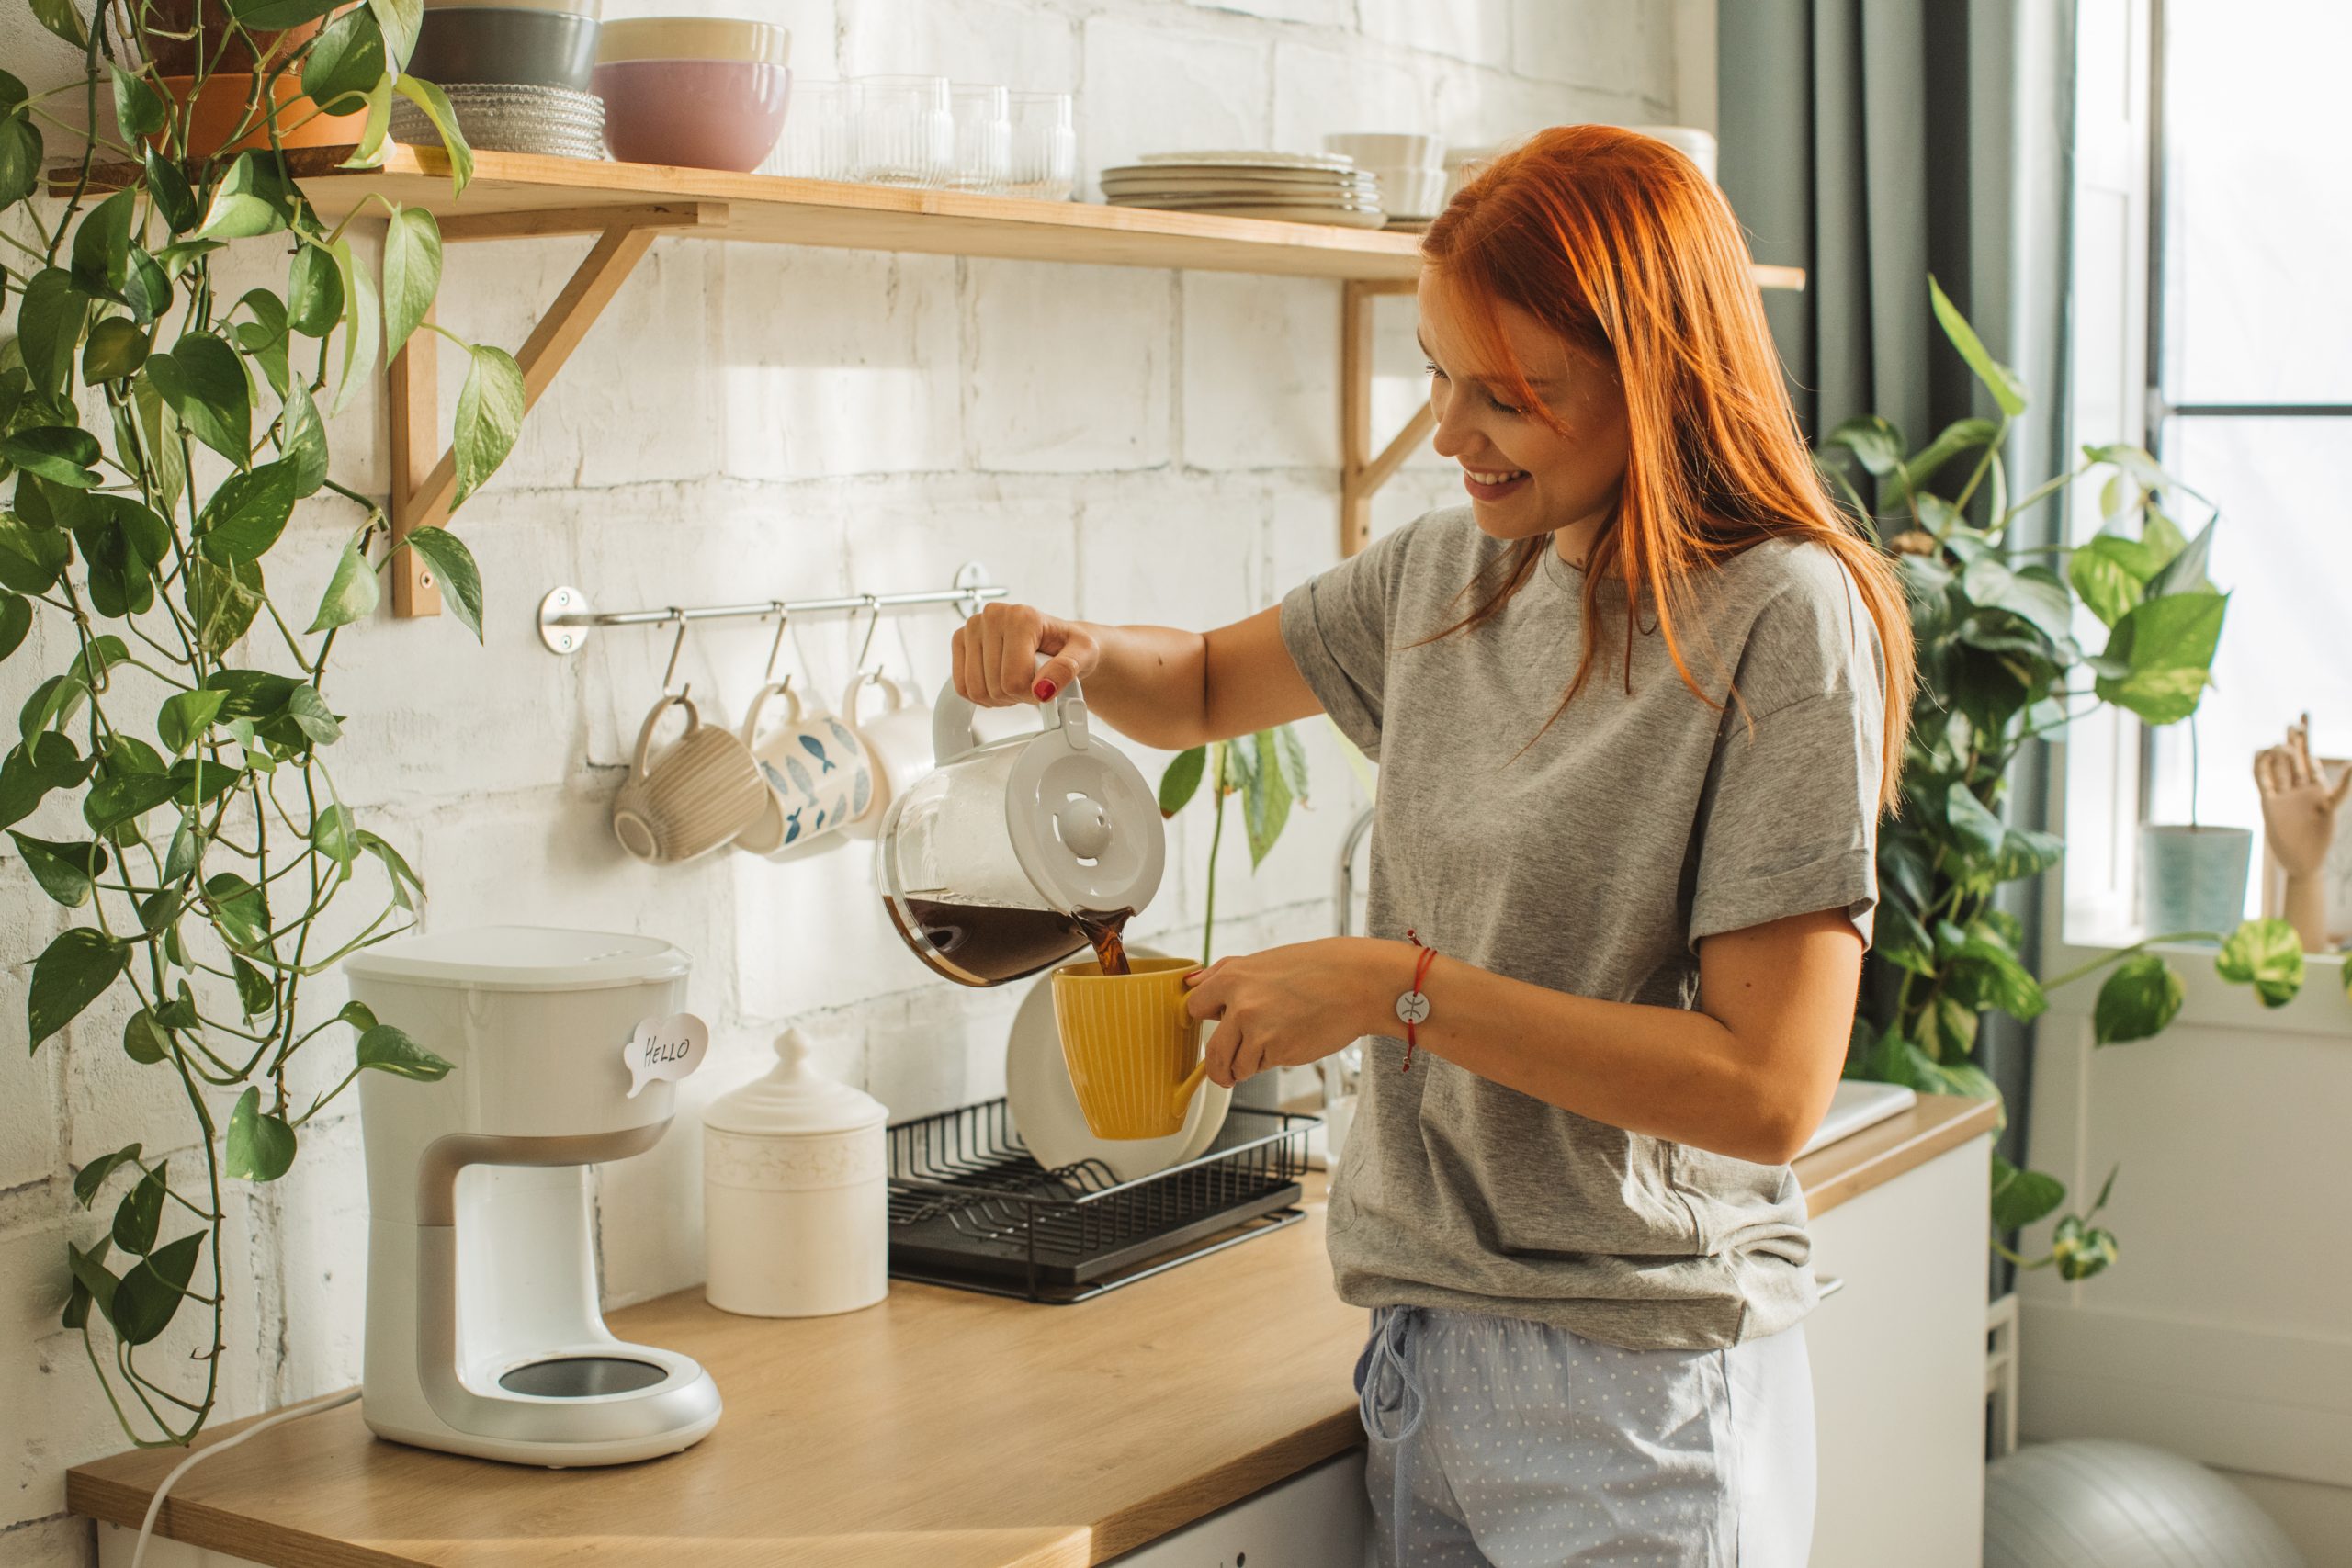 Εσύ τι βάζεις στον πρωινό σου καφέ; Μάθε ποια προσθήκη μπορεί να ενισχύσει το μεταβολισμό σου!